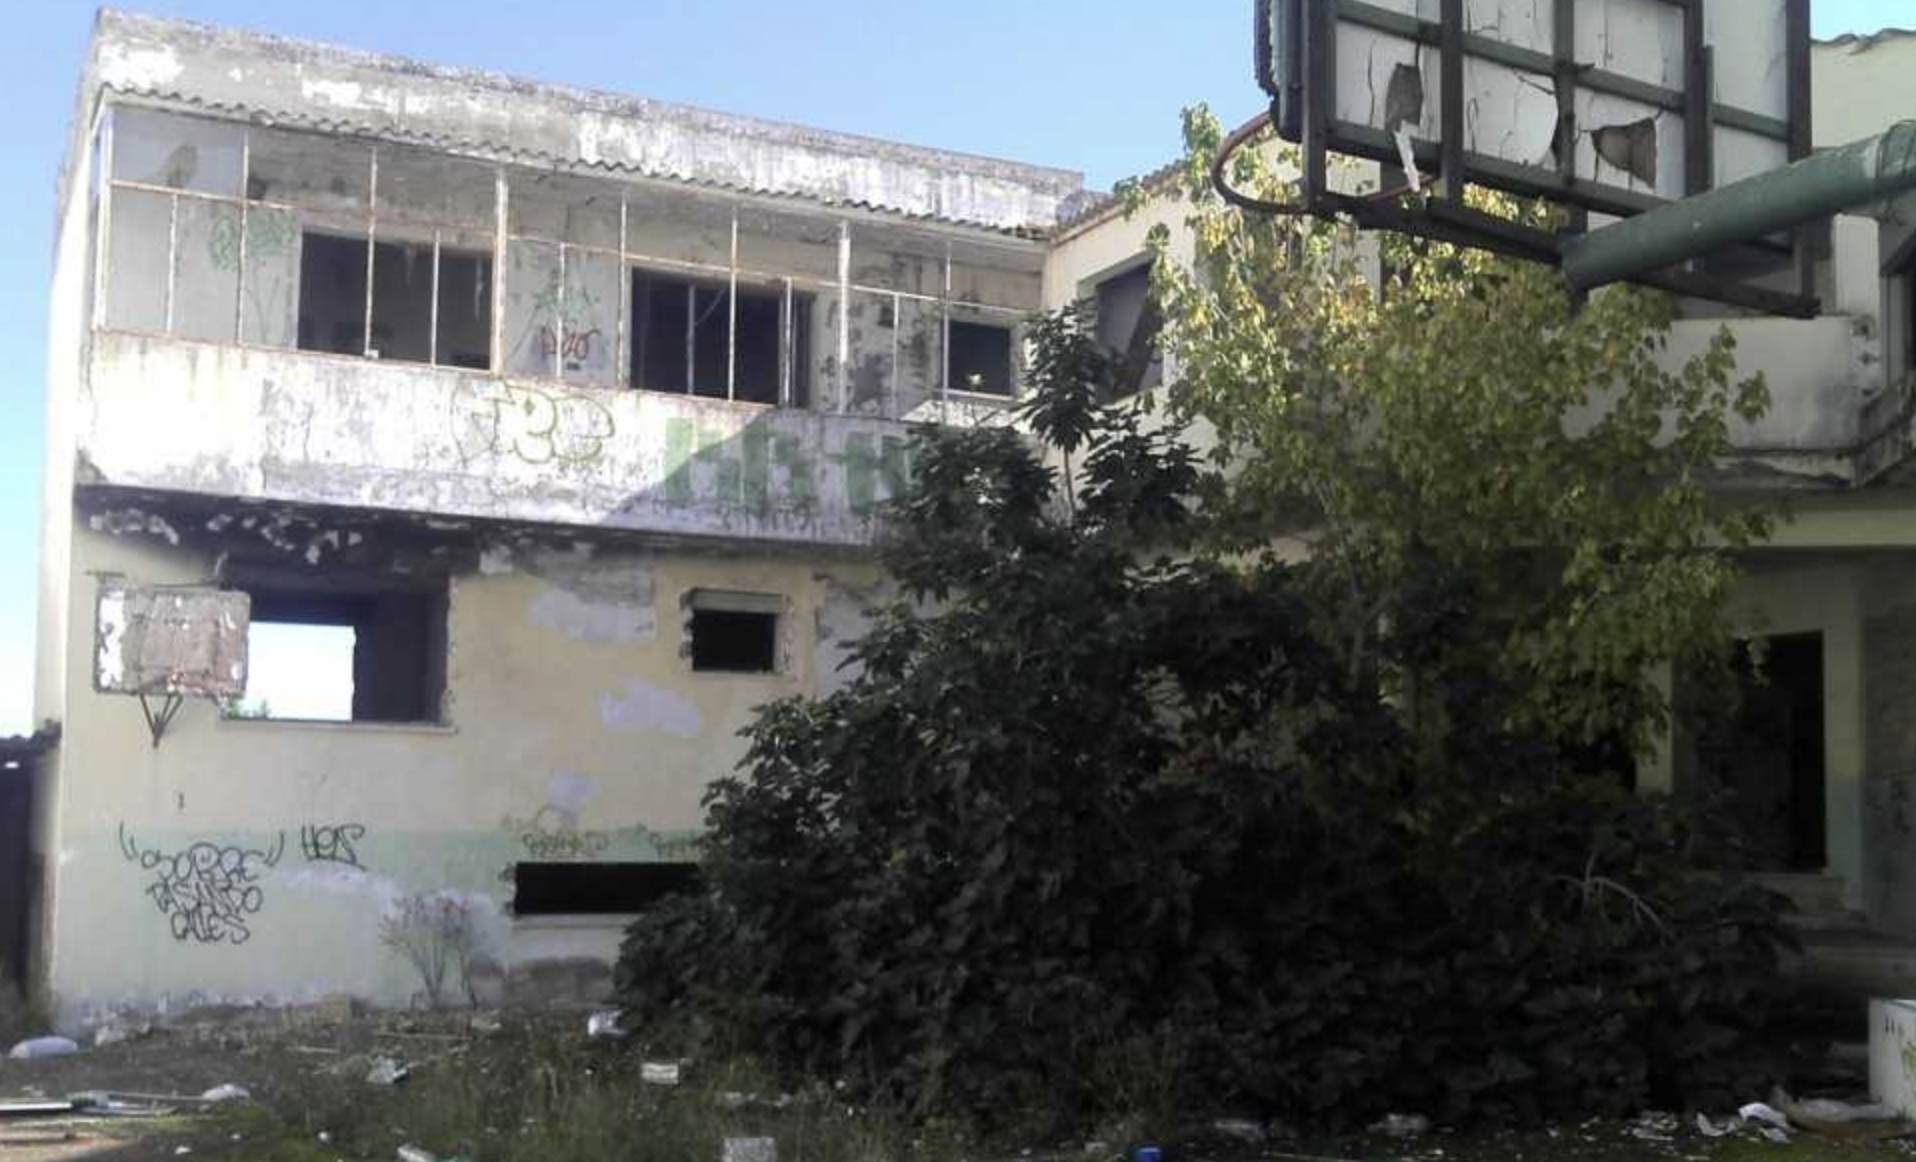 Interior del antiguo colegio Paidós, en La Vid, que acabará siendo demolido.